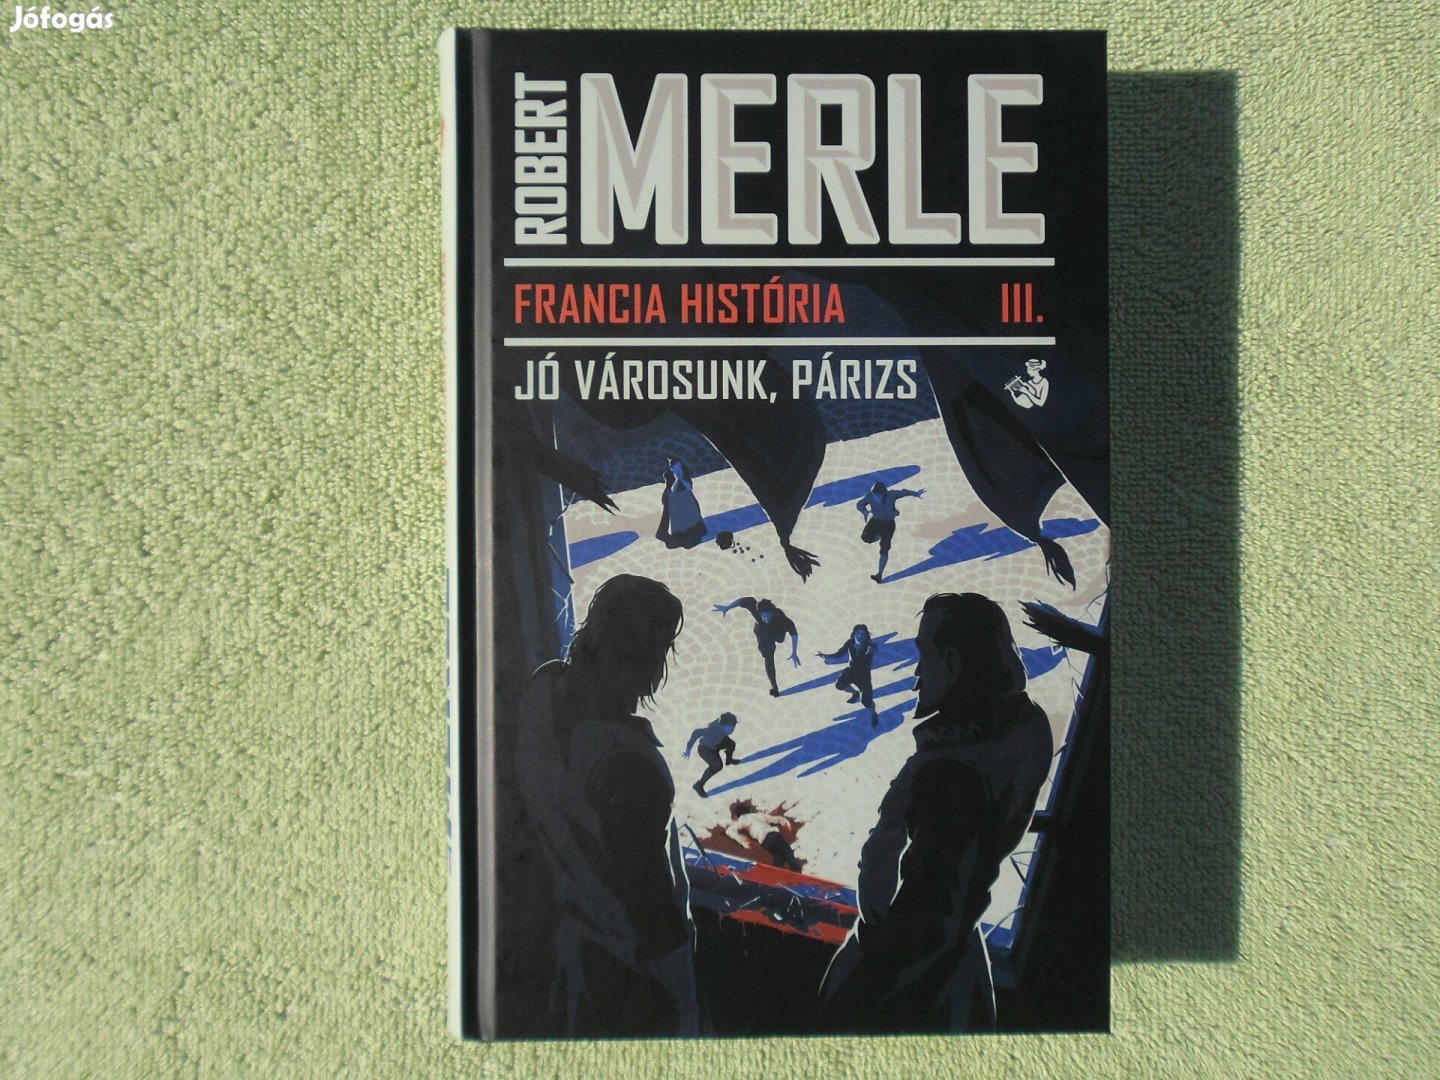 Robert Merle: Francia História III. - Jó városunk, Párizs